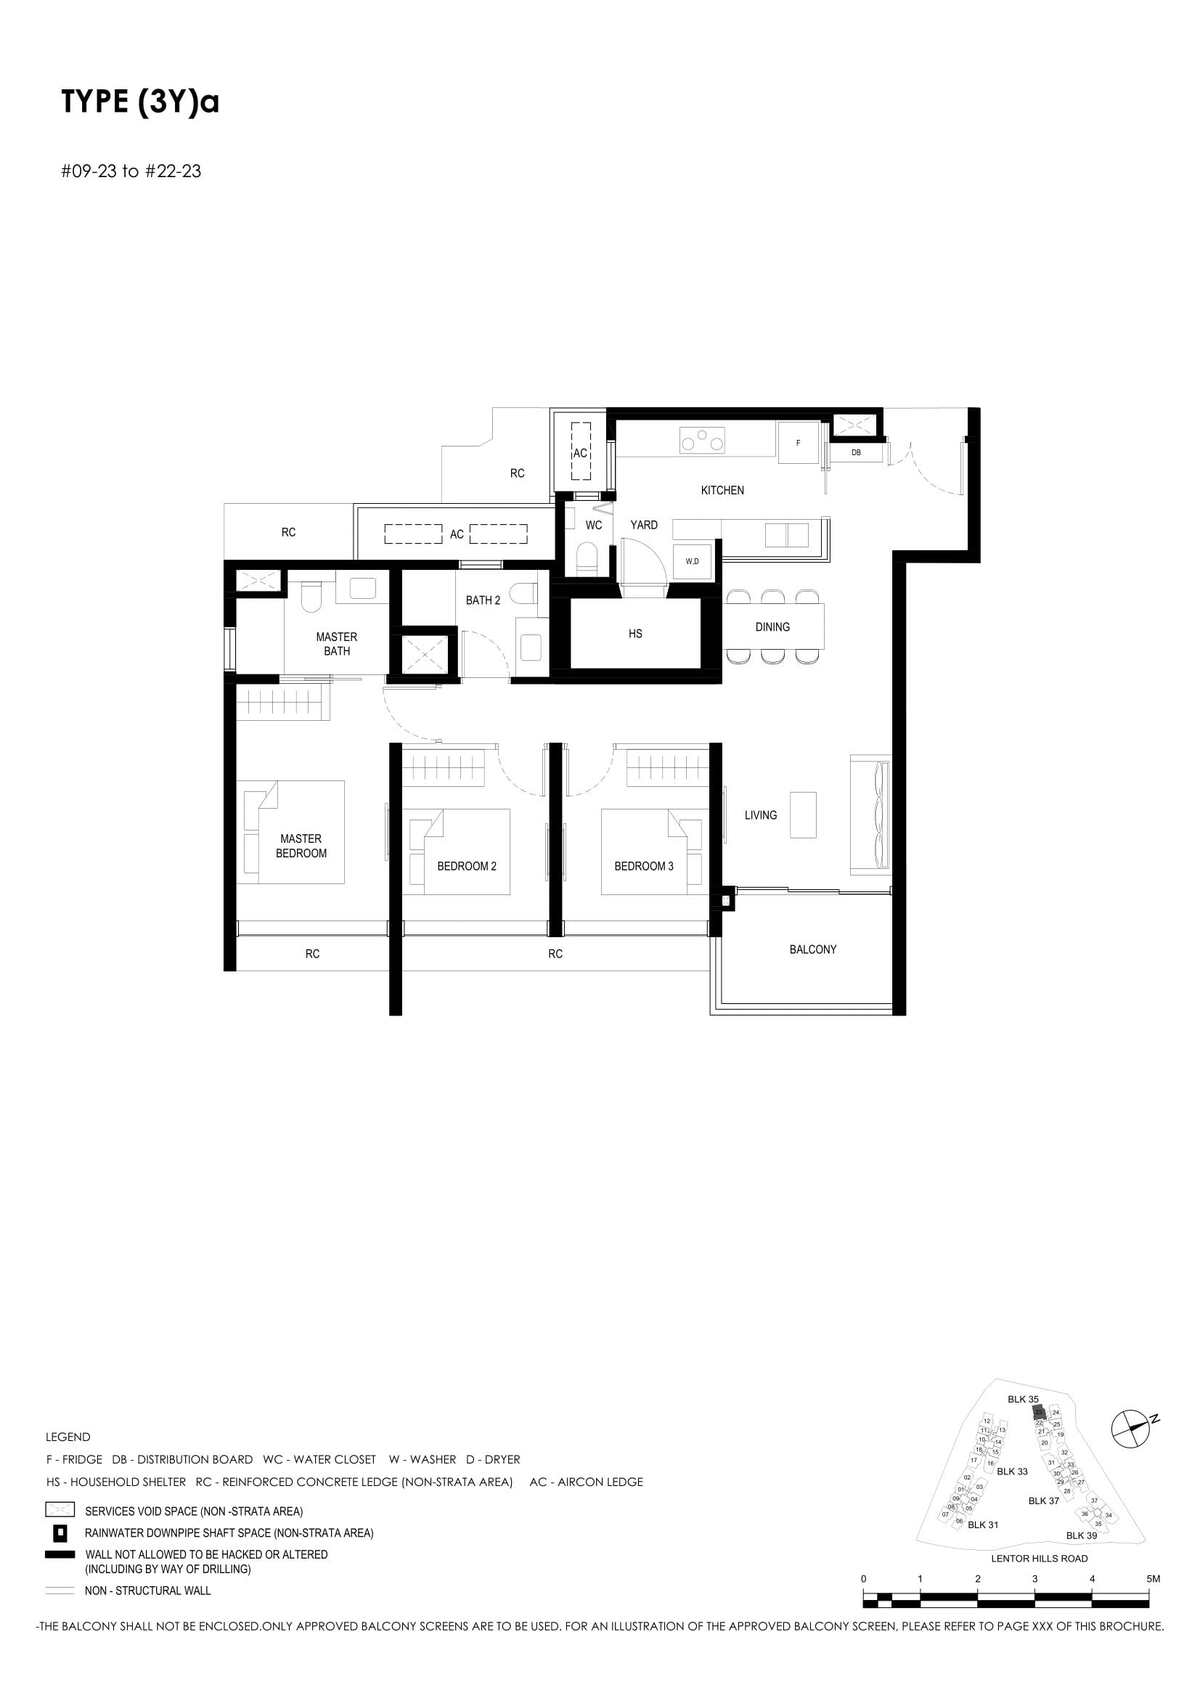 fp-lentor-hills-residences-3ya-floor-plan.jpg